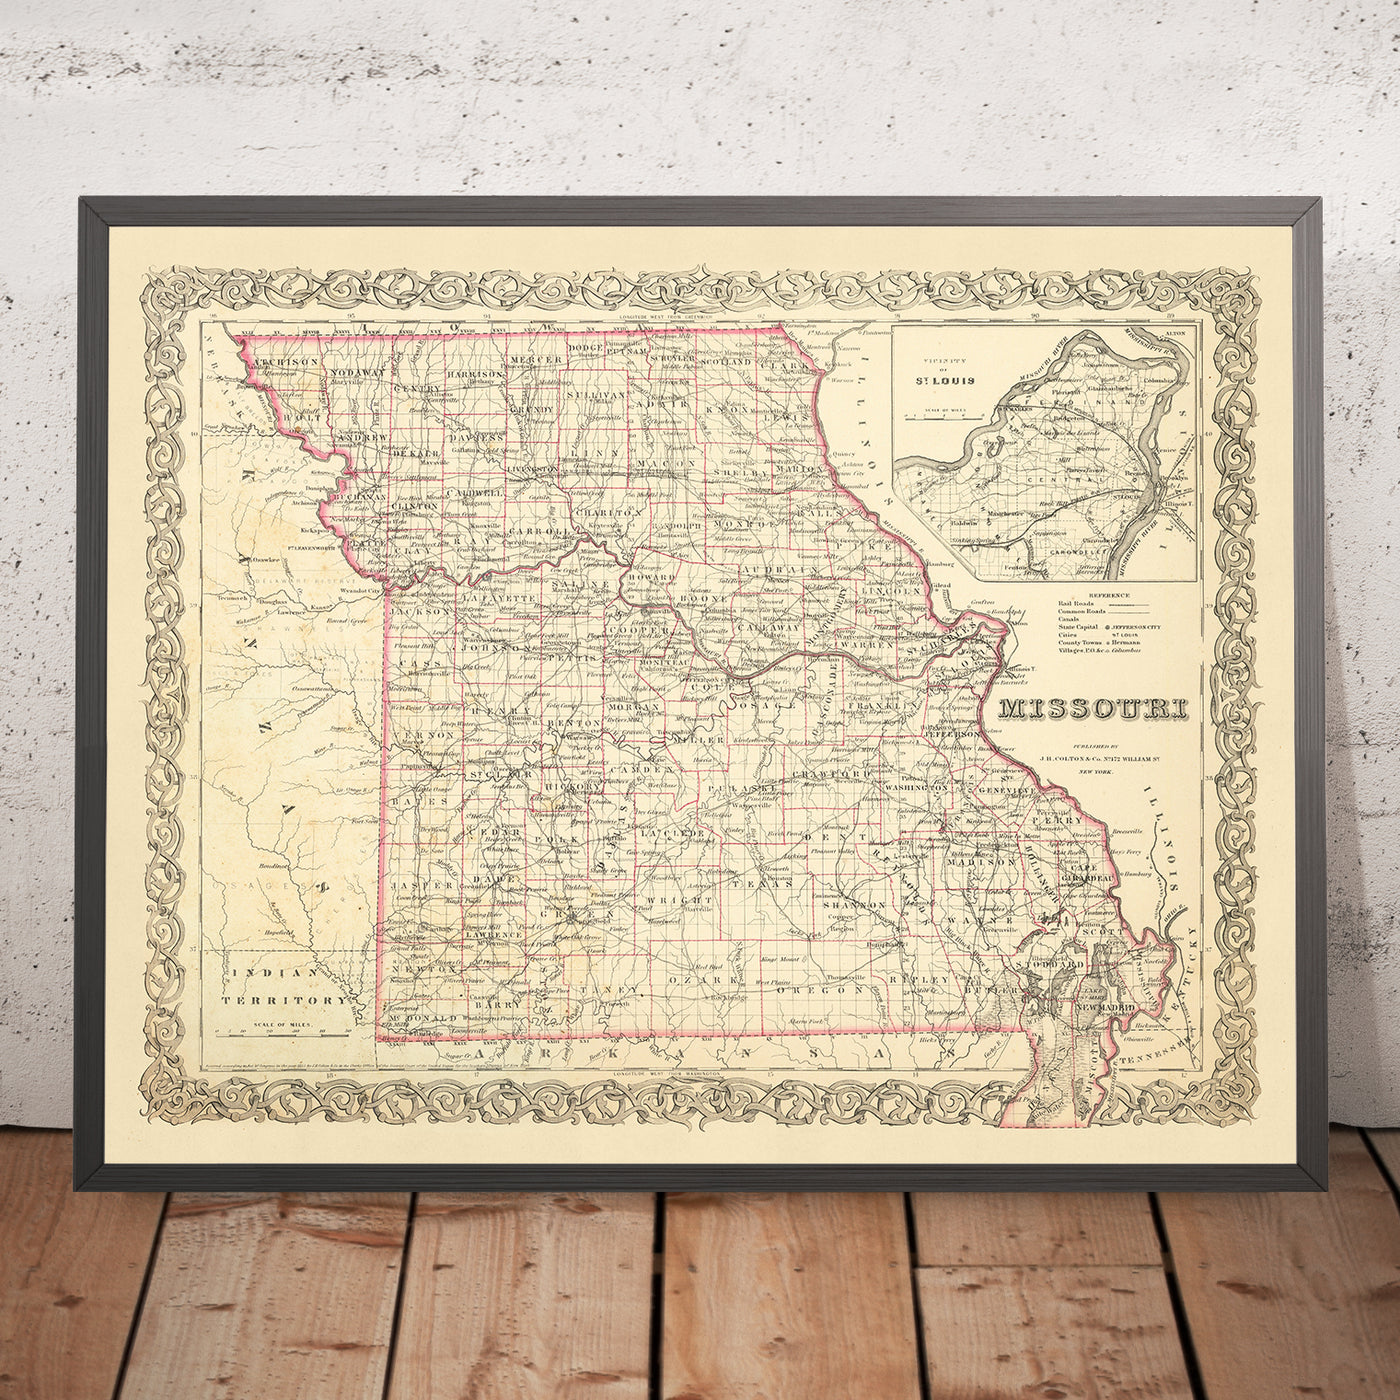 Ancienne carte du Missouri par JH Colton, 1860 : Saint-Louis, Kansas City, Springfield, Independence, Jefferson City